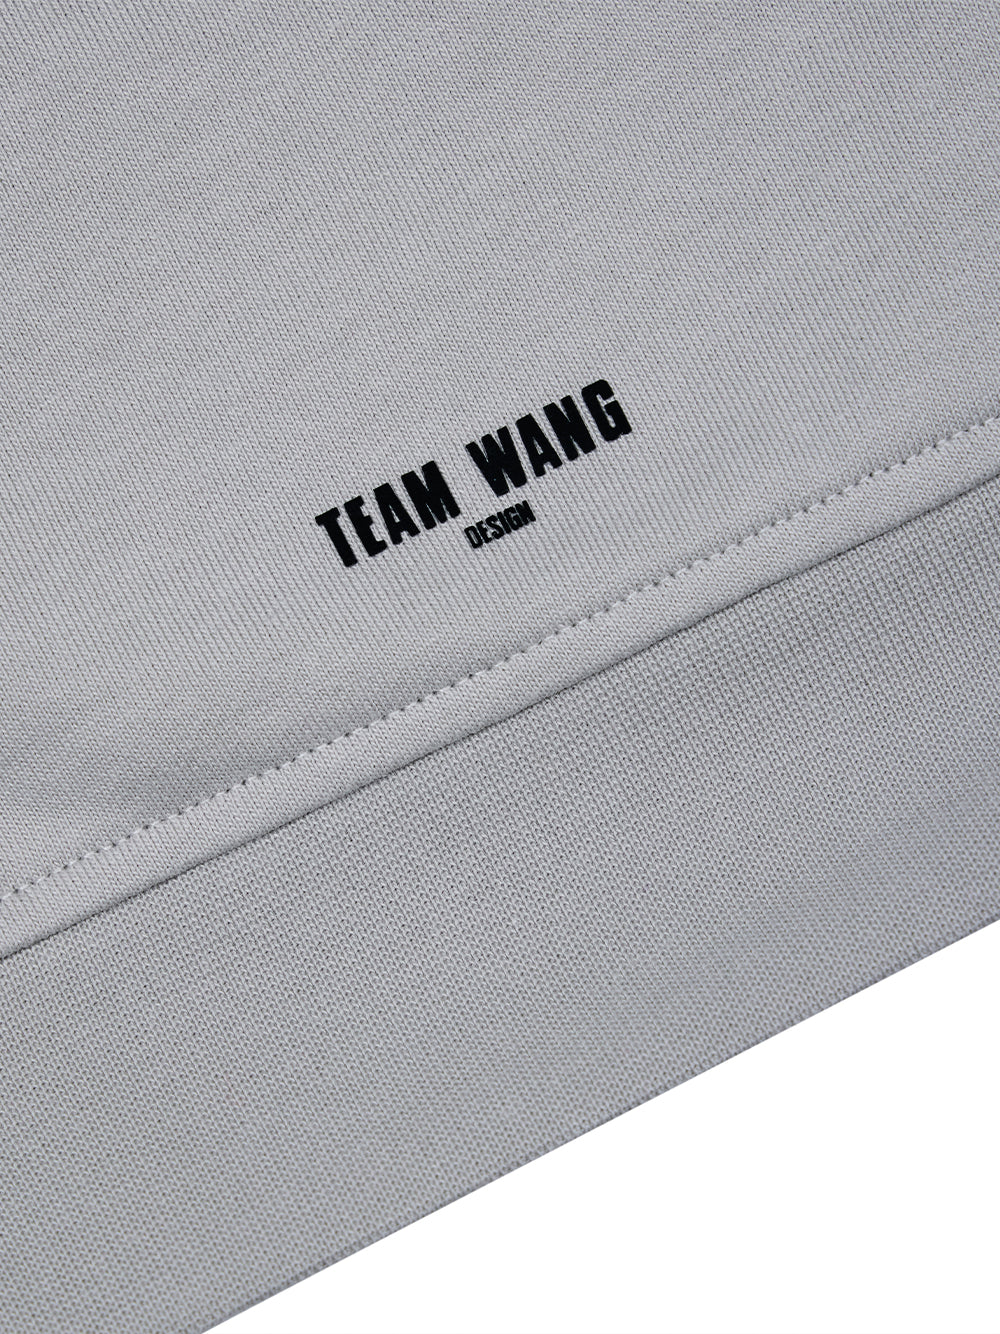 TEAM WANG design x CHUANG ASIA Zip-Up Casual Jacket (Grey)